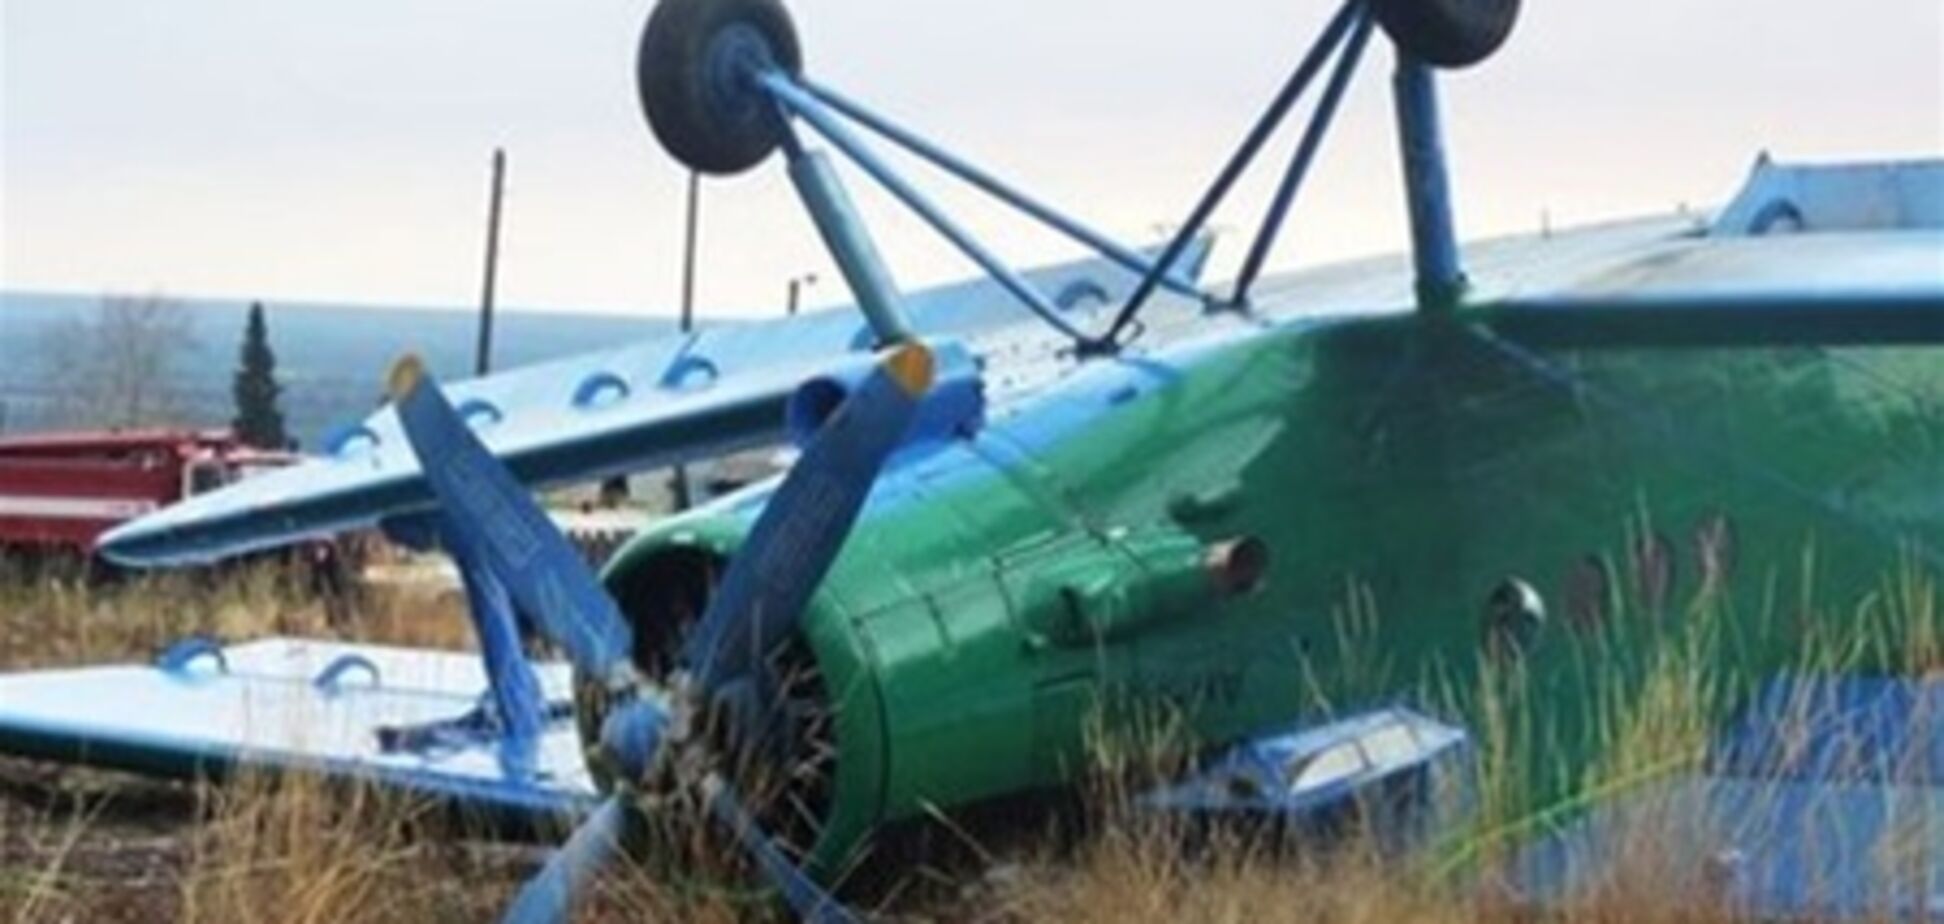 Личности погибших в авиакатастрофе на Урале станут известны через две недели